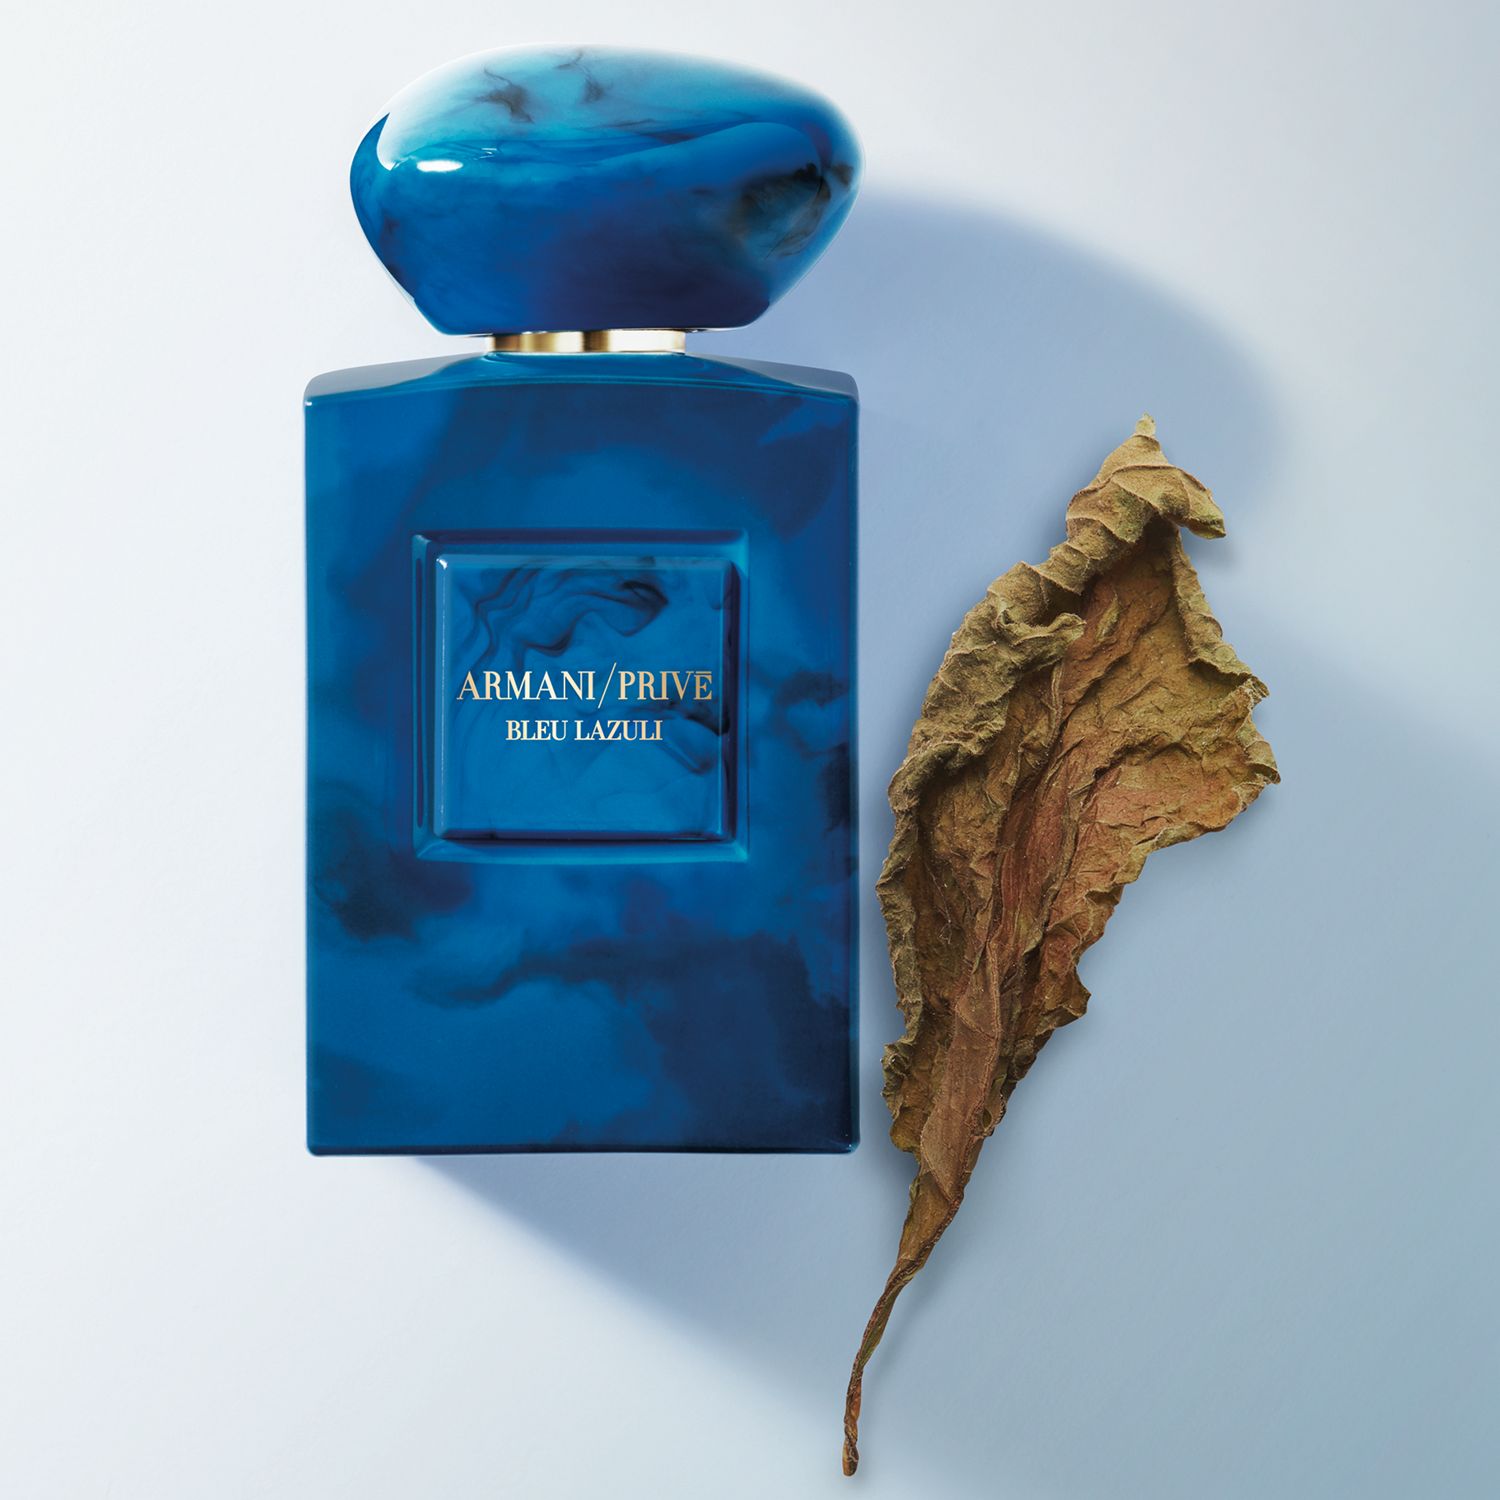 armani bleu lazuli review